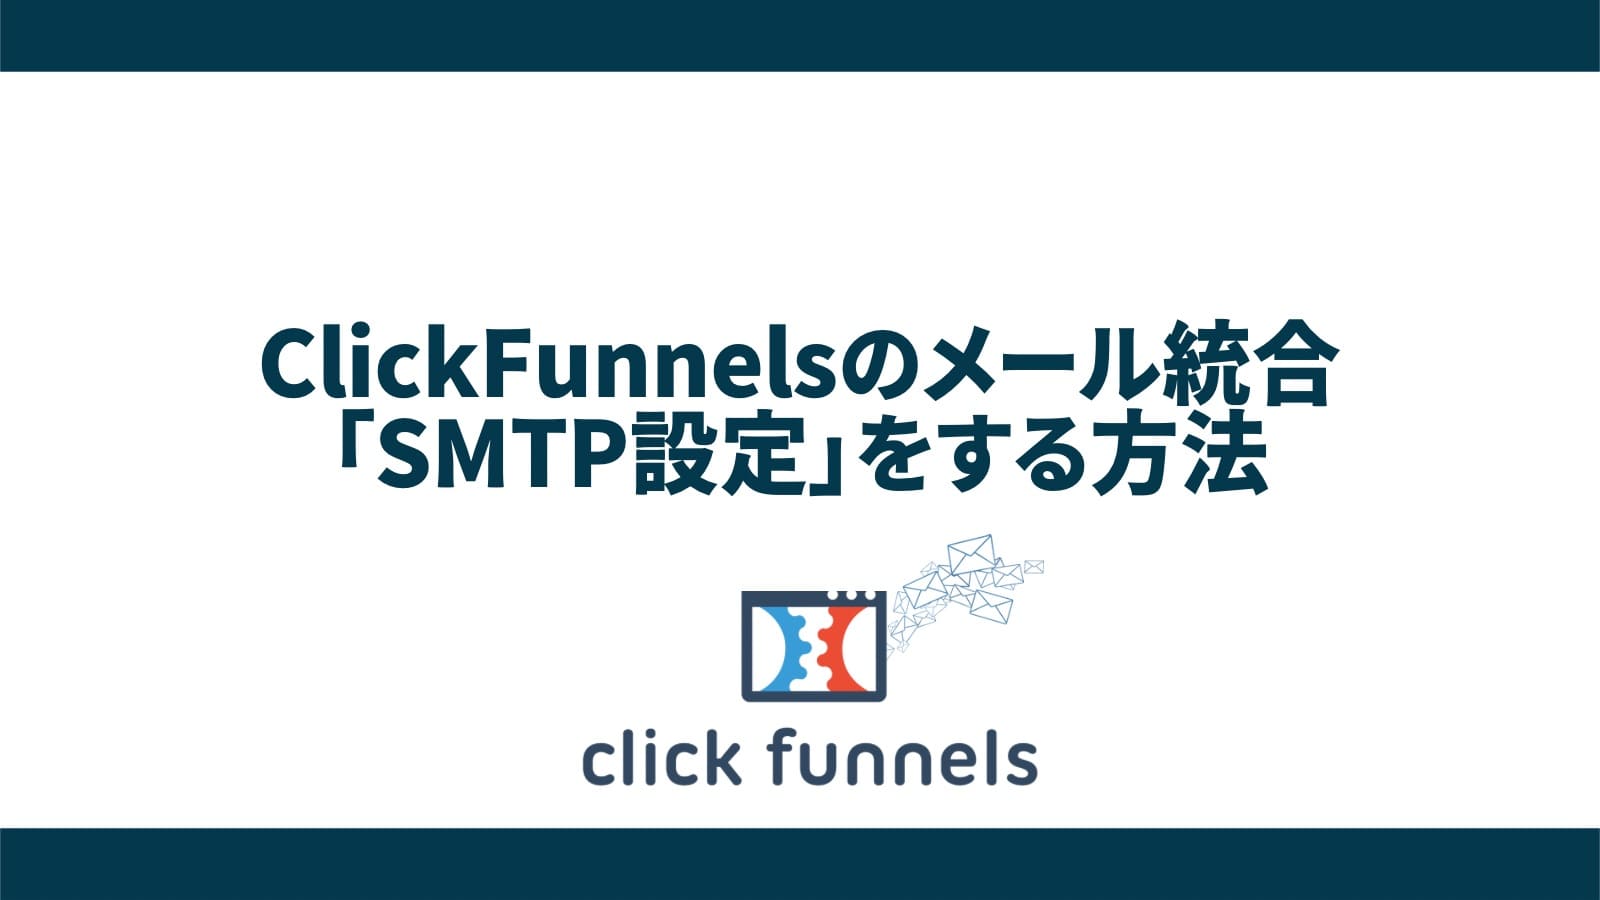 【簡単】ClickFunnelsでカスタムドメインをクラウドフレアなしで設定する方法【クリックファネル】